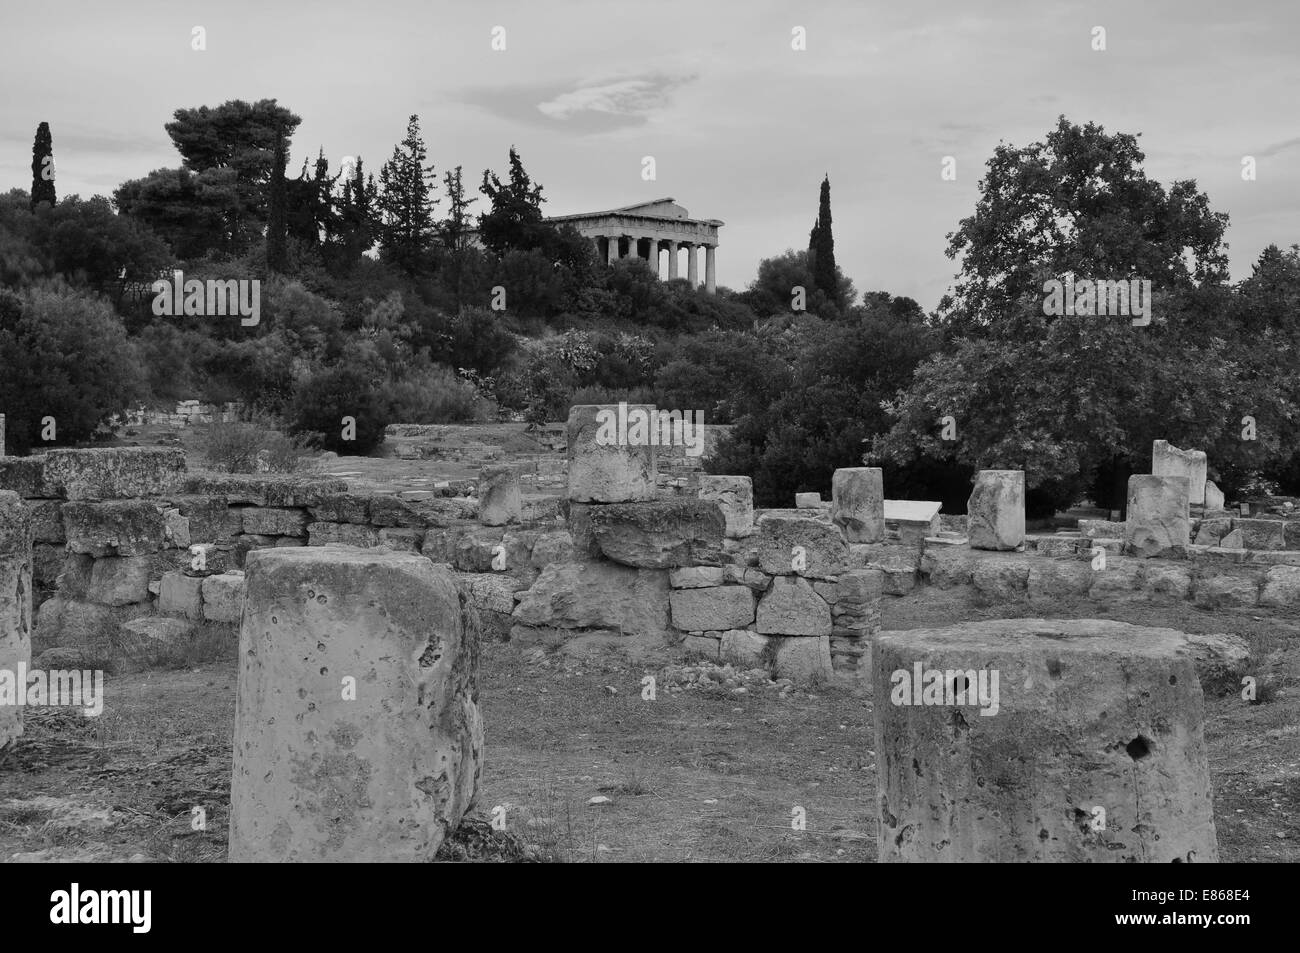 Vistas al templo de Hefesto desde las ruinas de la antigua ágora en Atenas, Grecia. Blanco y negro. Foto de stock